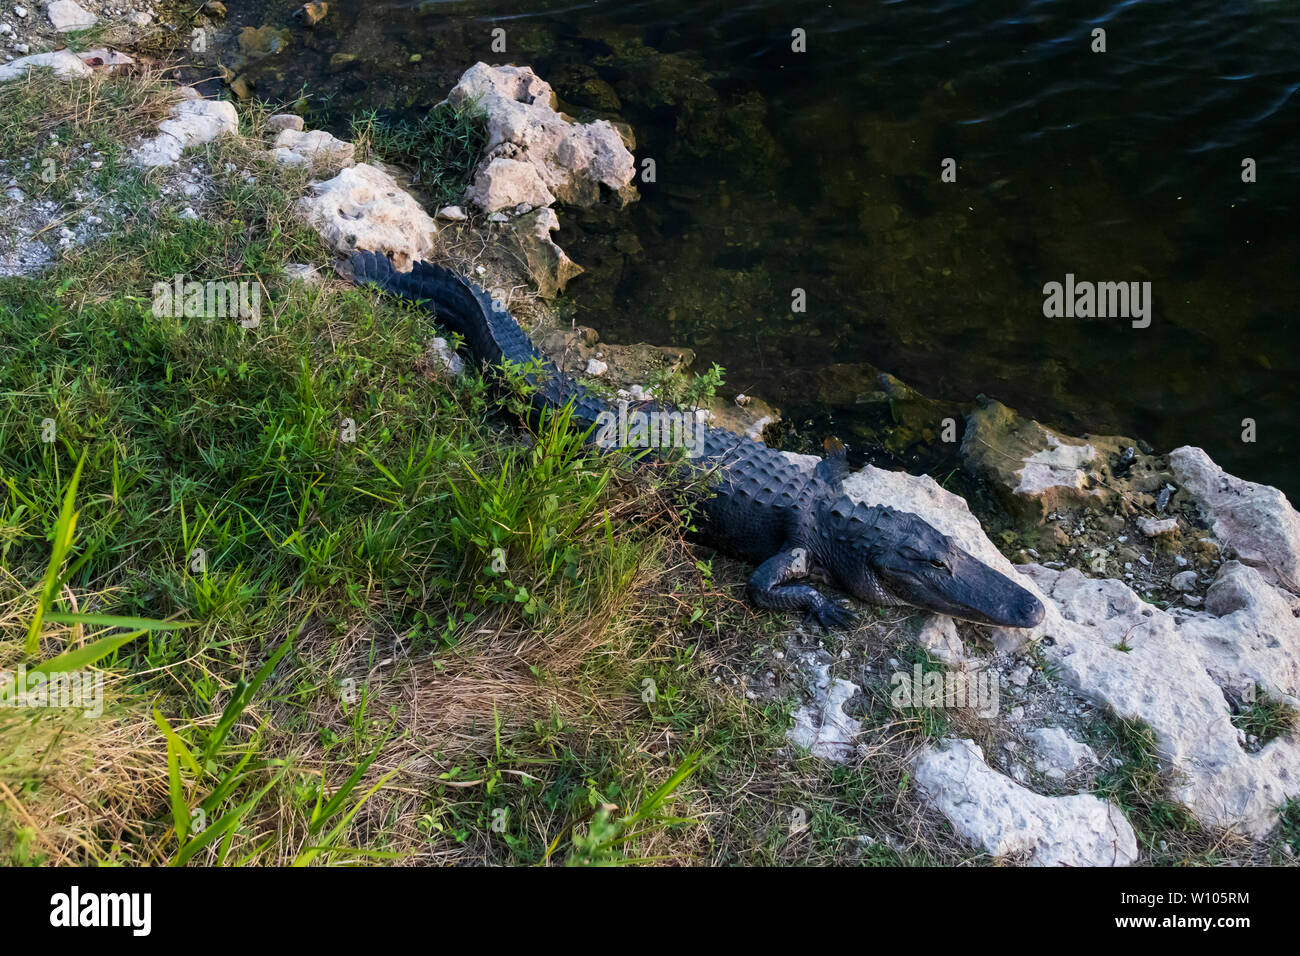 Alligator sentando sobre rocas junto al agua en el Parque Nacional Everglades, Florida, EE.UU. Foto de stock